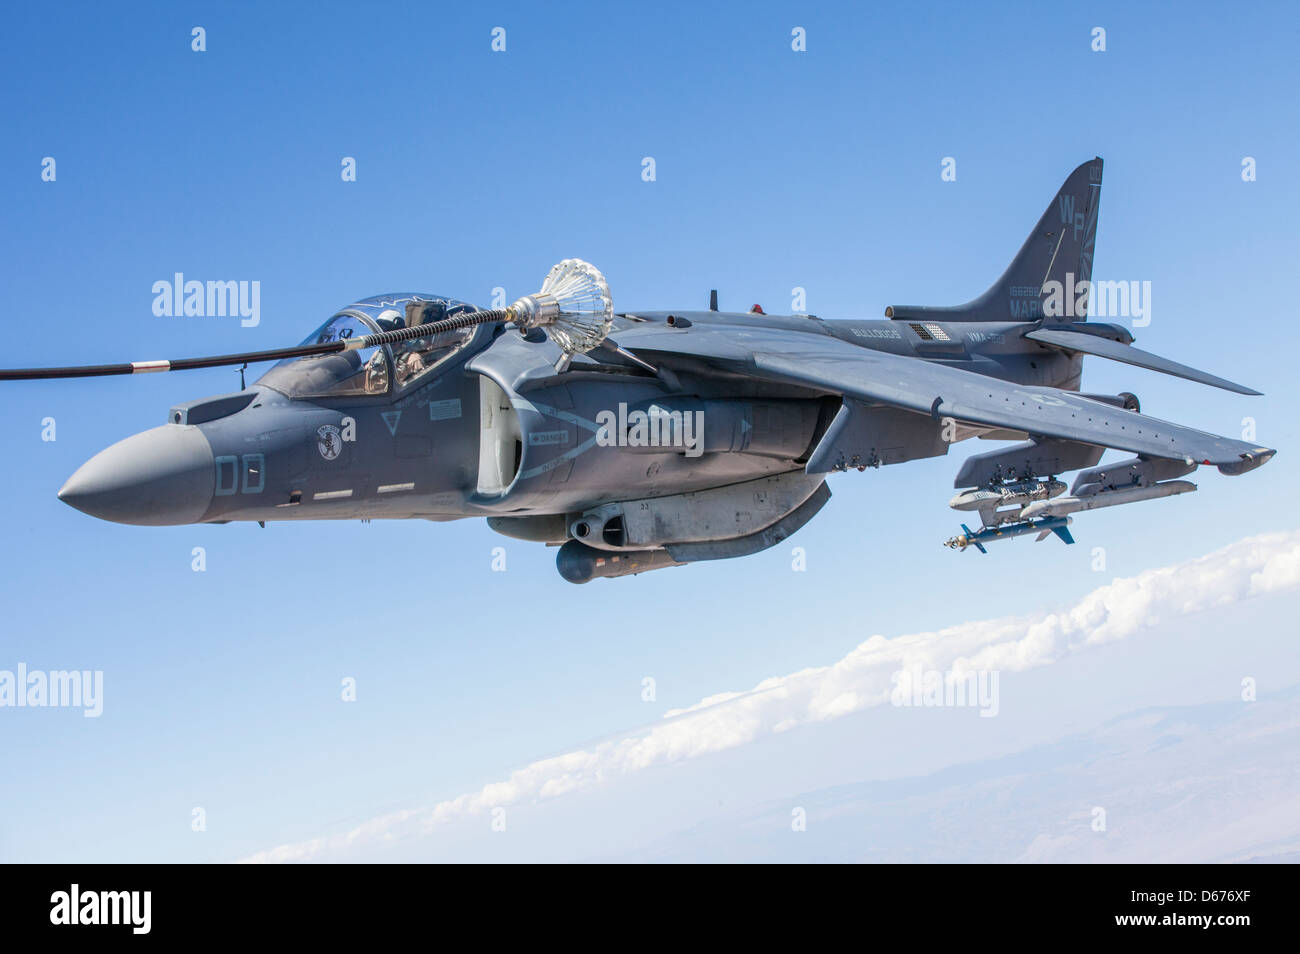 John Grunke, un pilota di Harrier AV-8B con armi per l'aviazione marina e Squadron tattico 1, si allena nel suo aereo durante il corso di addestramento per le armi e le tattiche di primavera ospitato da MAWTS-1 presso la stazione aerea del corpo dei Marine Yuma, Ariz., marzo 30. WTI è un'evoluzione formativa progettata per promuovere le migliori competenze possibili negli aviatori del corpo marino di oggi. Foto Stock